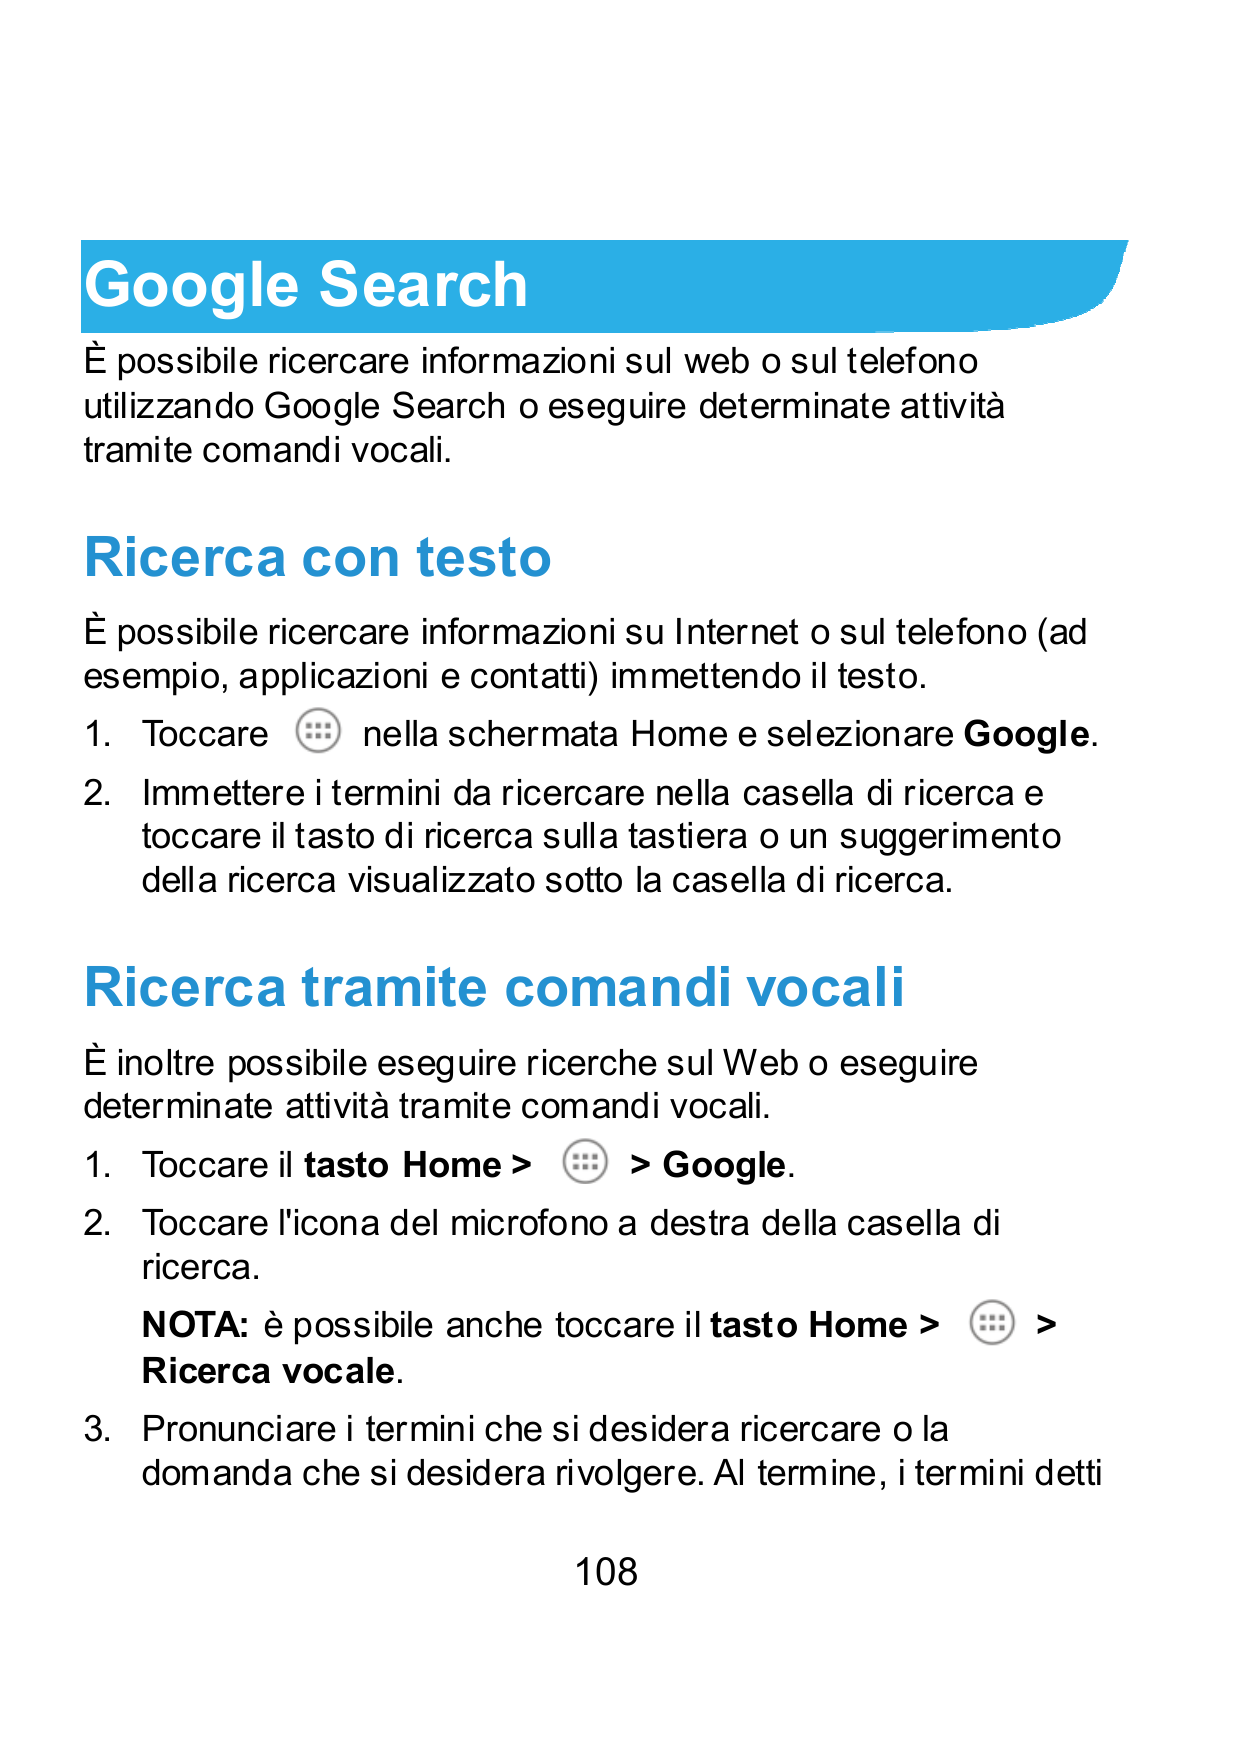 Google SearchÈ possibile ricercare informazioni sul web o sul telefonoutilizzando Google Search o eseguire determinate attivitàt